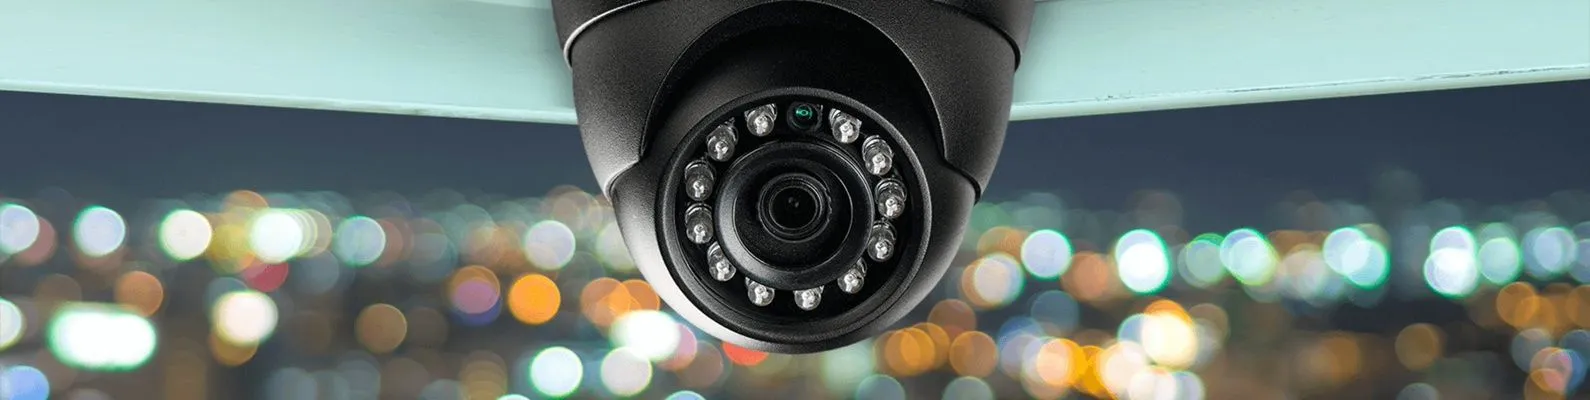 Как выбрать IP-камеру для видеонаблюдения